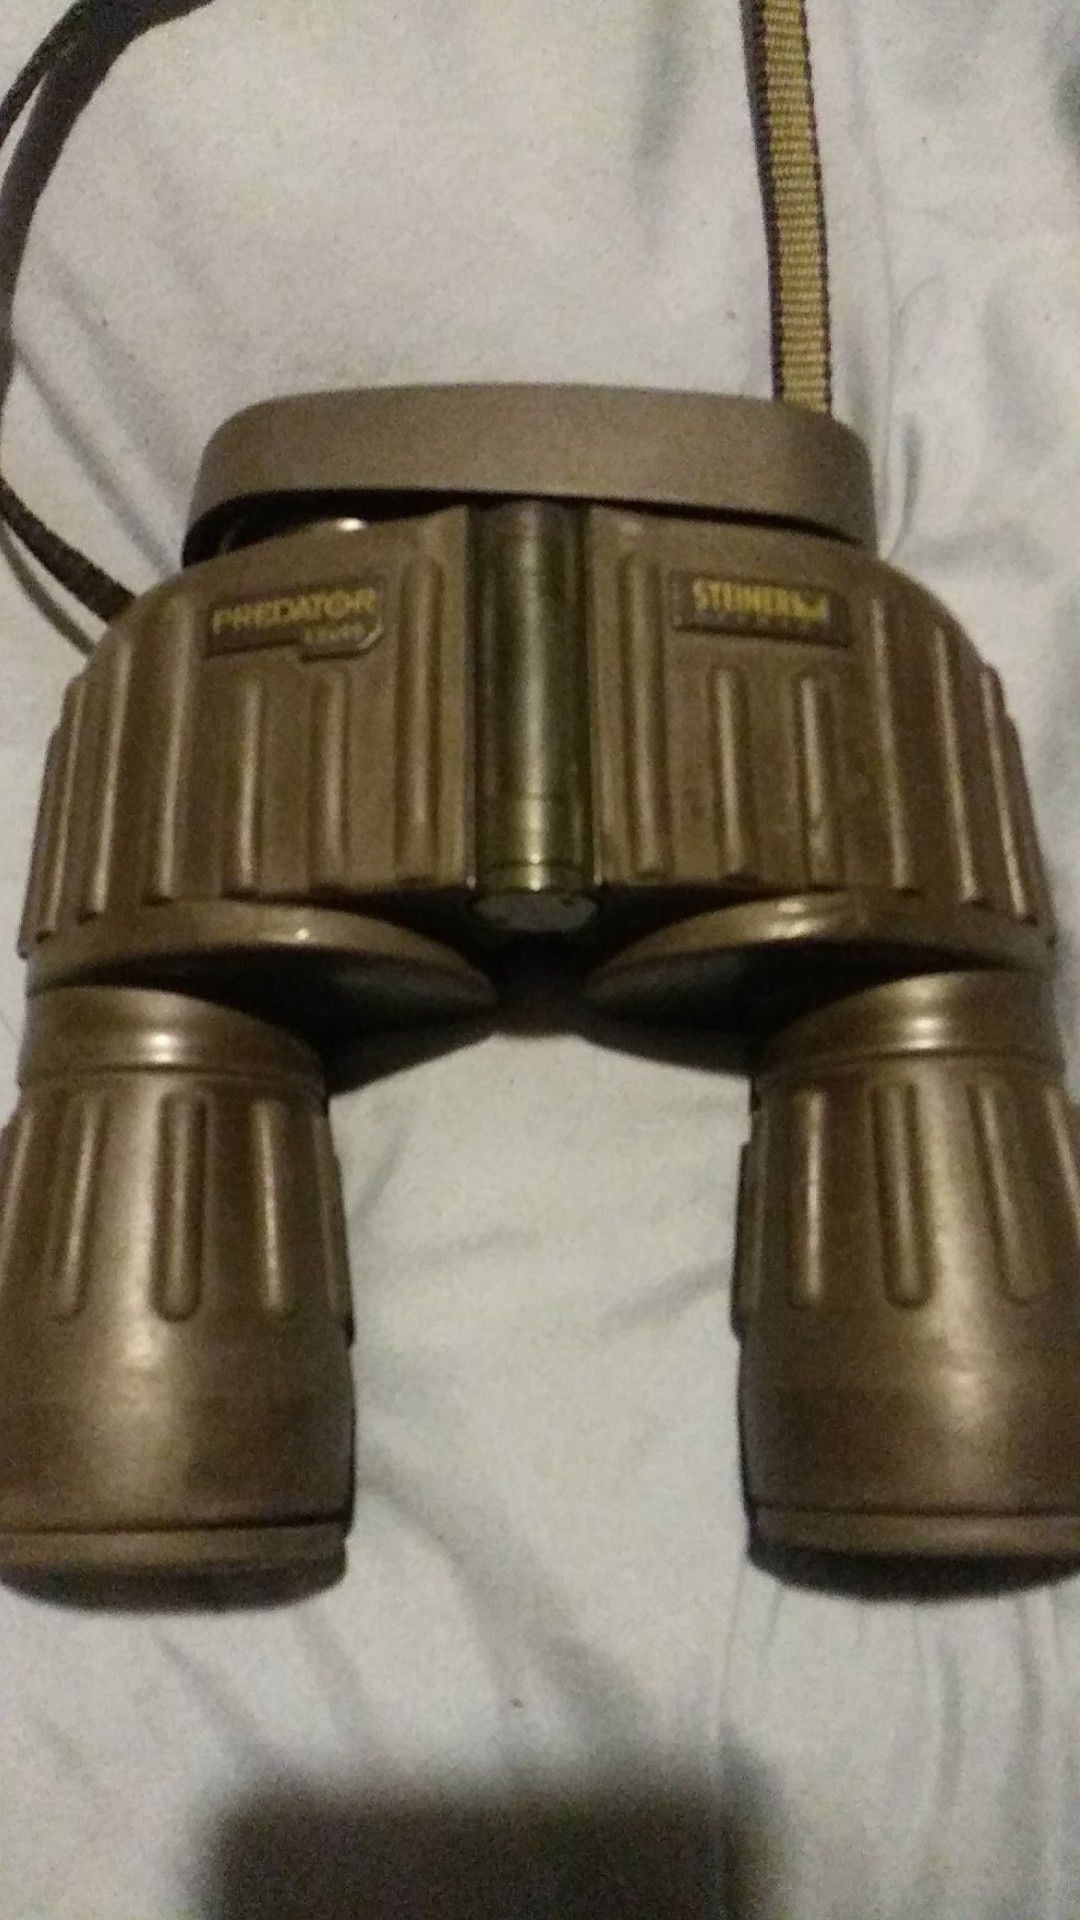 Steiner Predator 12×40 military grade binoculars